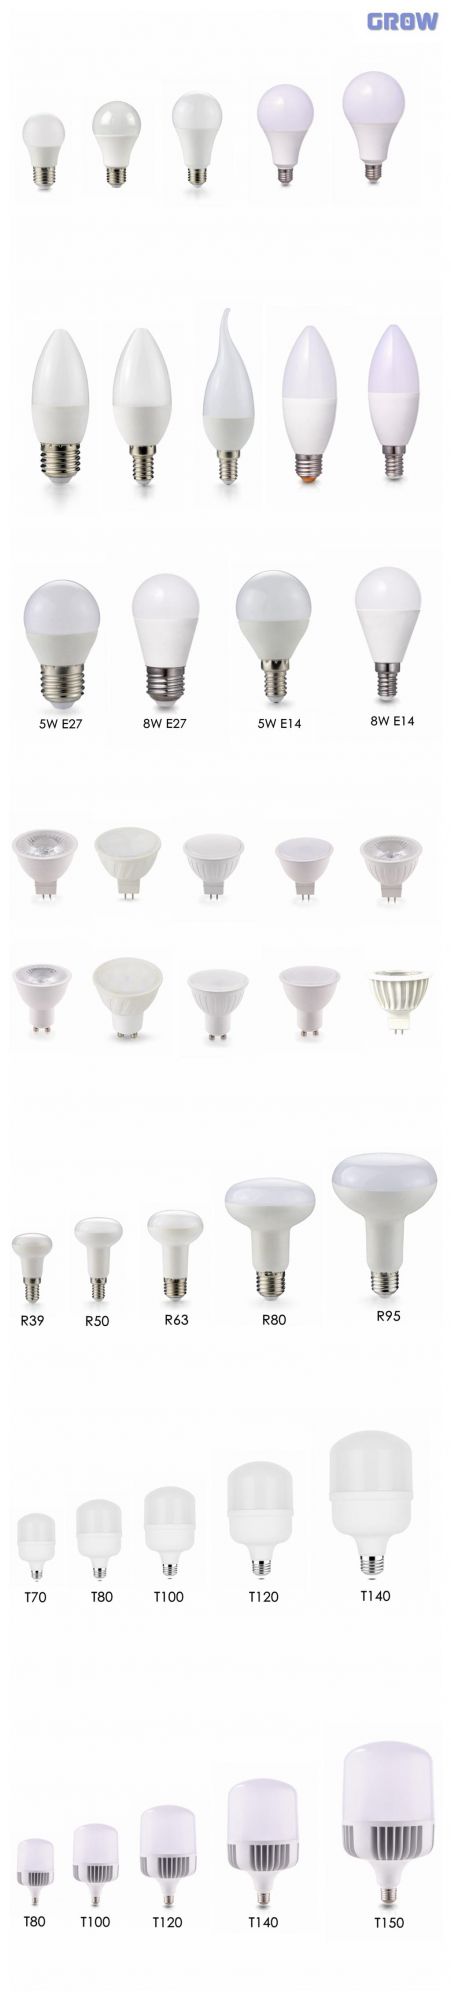 R63 LED Bulb Light High Lumen E27 8W/10W/12W Plastic and Aluminium LED Bulb Lamp Light for Indoor Lighting